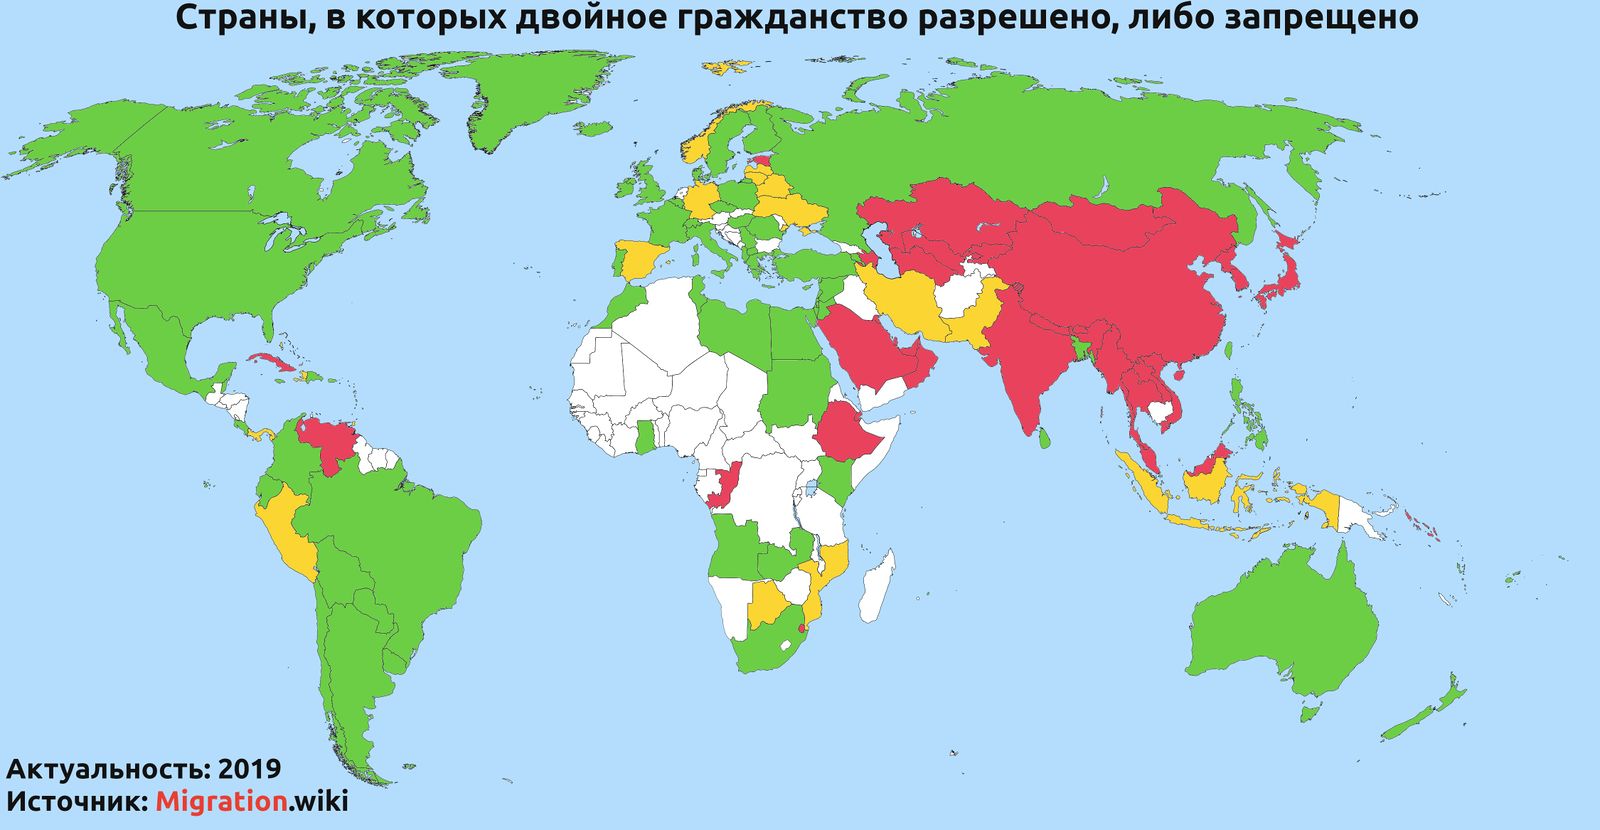 С какими странами разрешено двойное гражданство в россии в 2019 году (список)